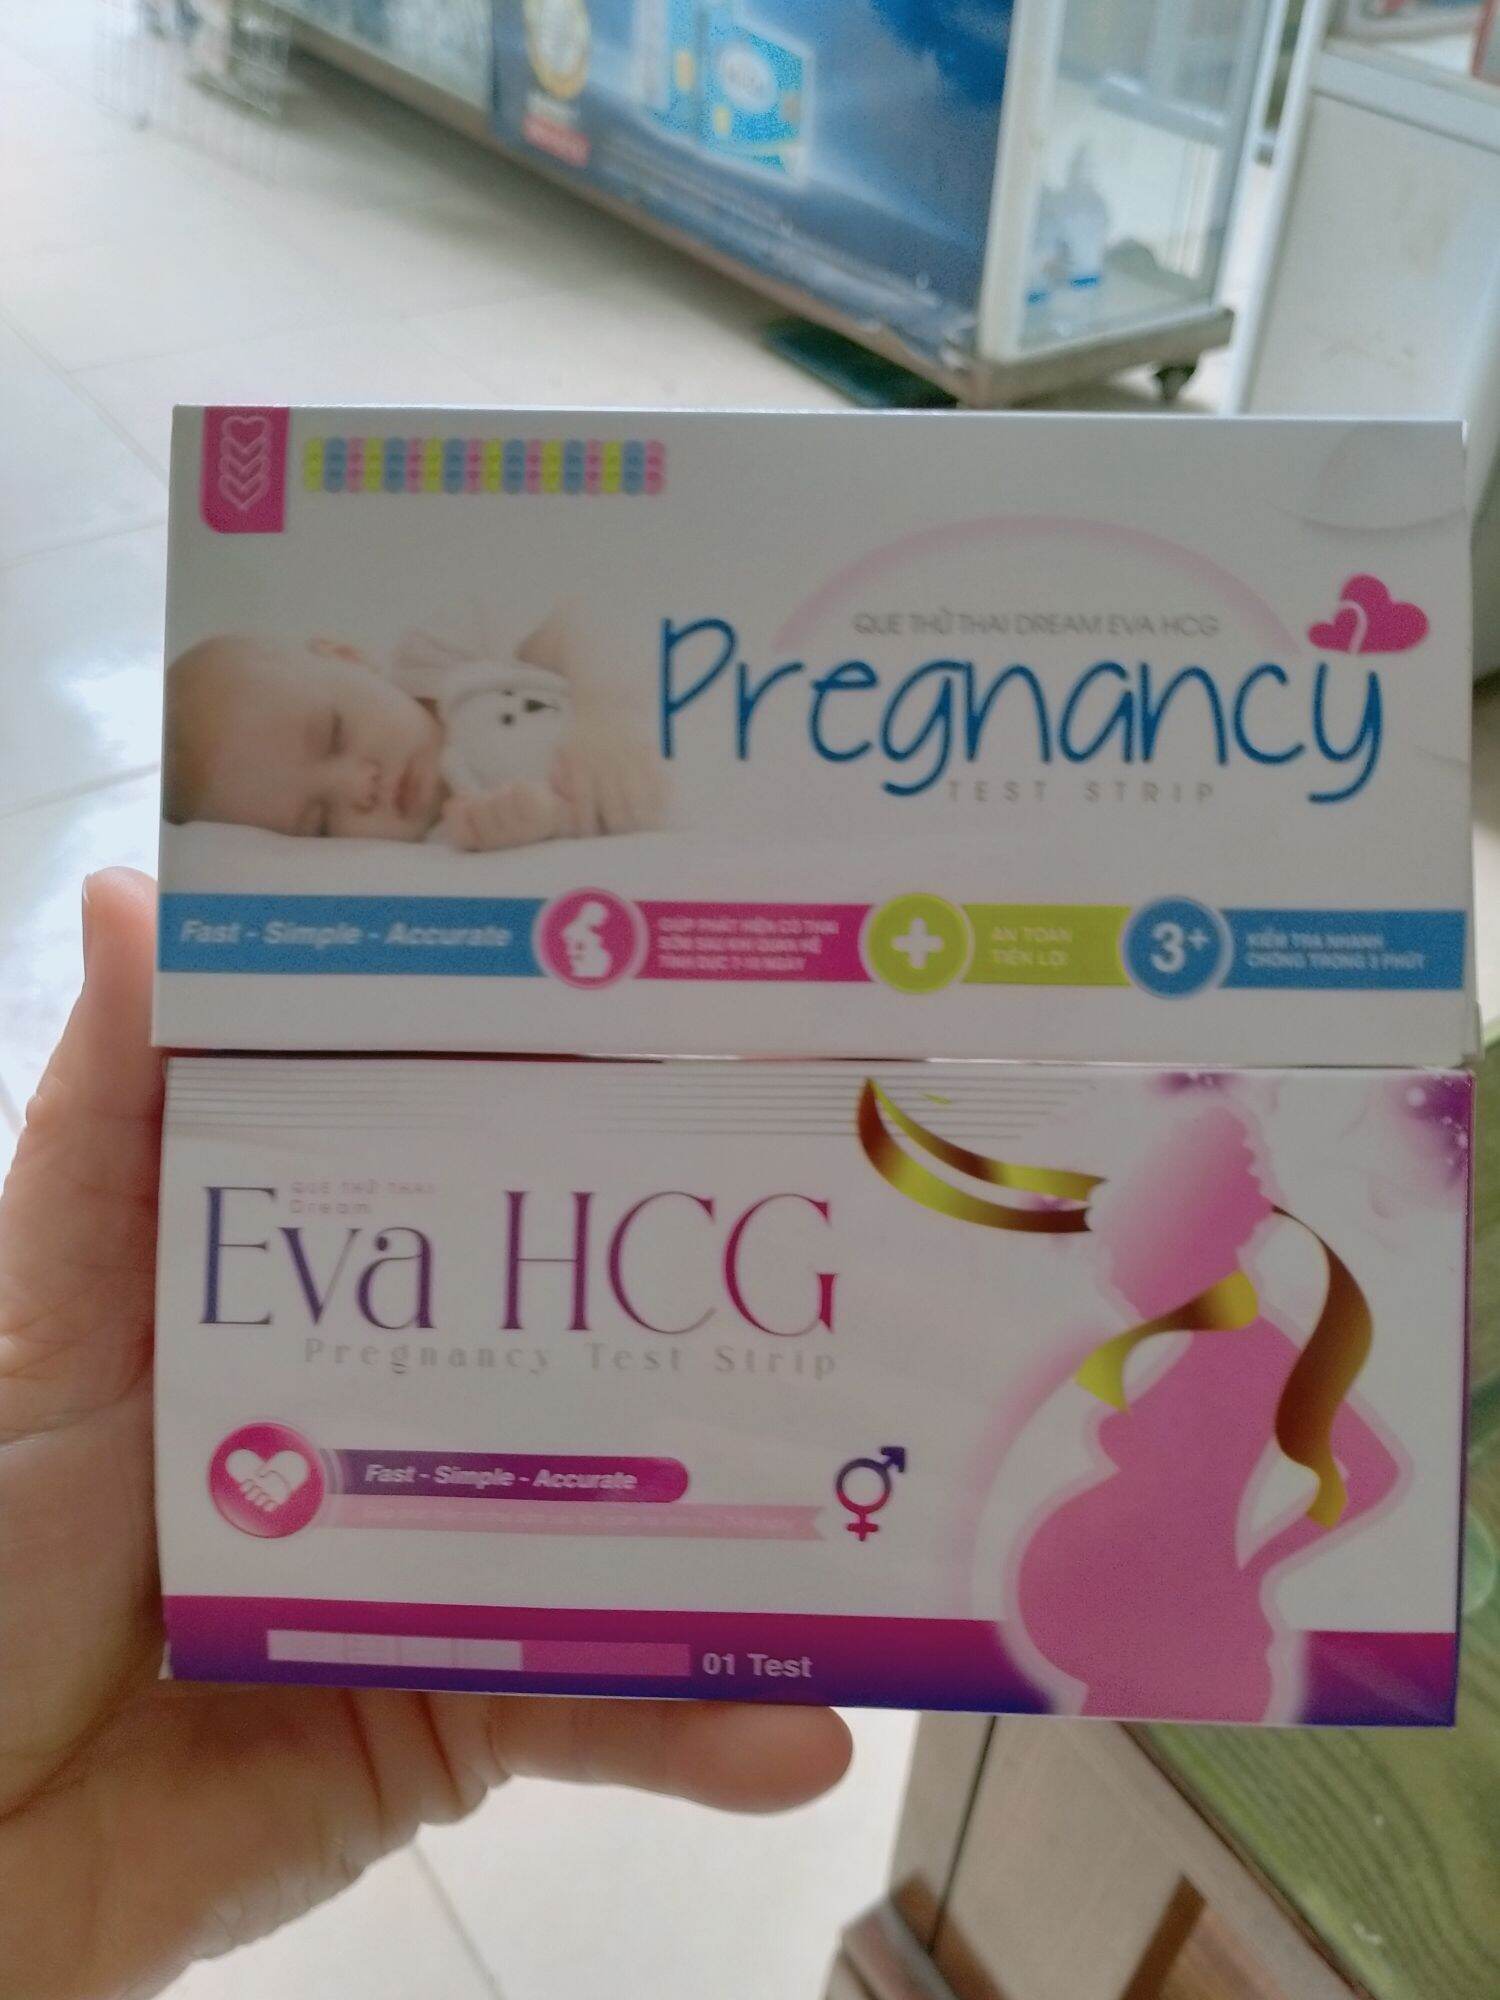 Que thử thai EVa HCG